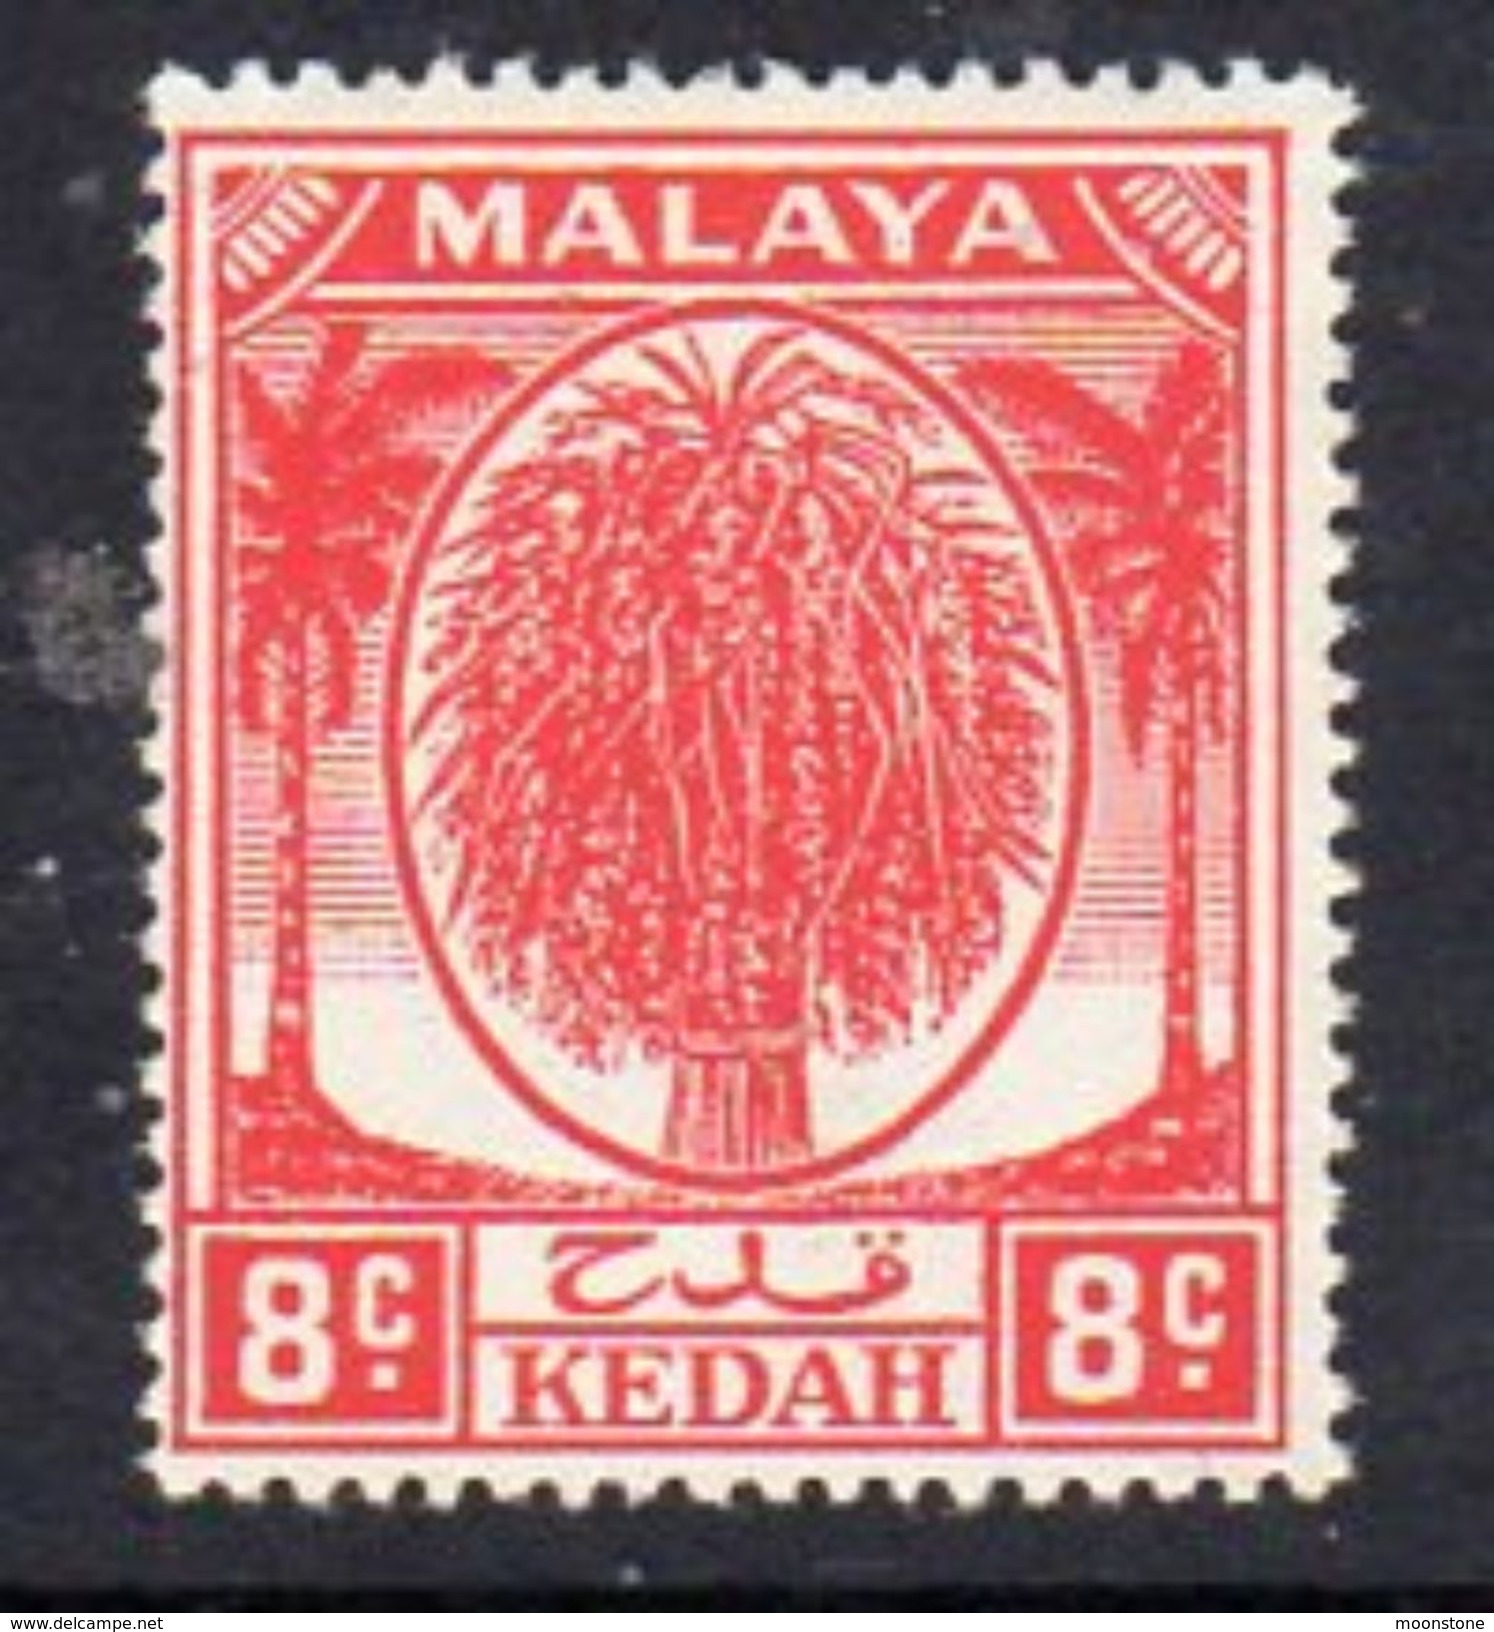 Malaya Kedah 1950-55 Sheaf Of Rice 8c Scarlet Definitive, Hinged Mint, SG 81 - Kedah